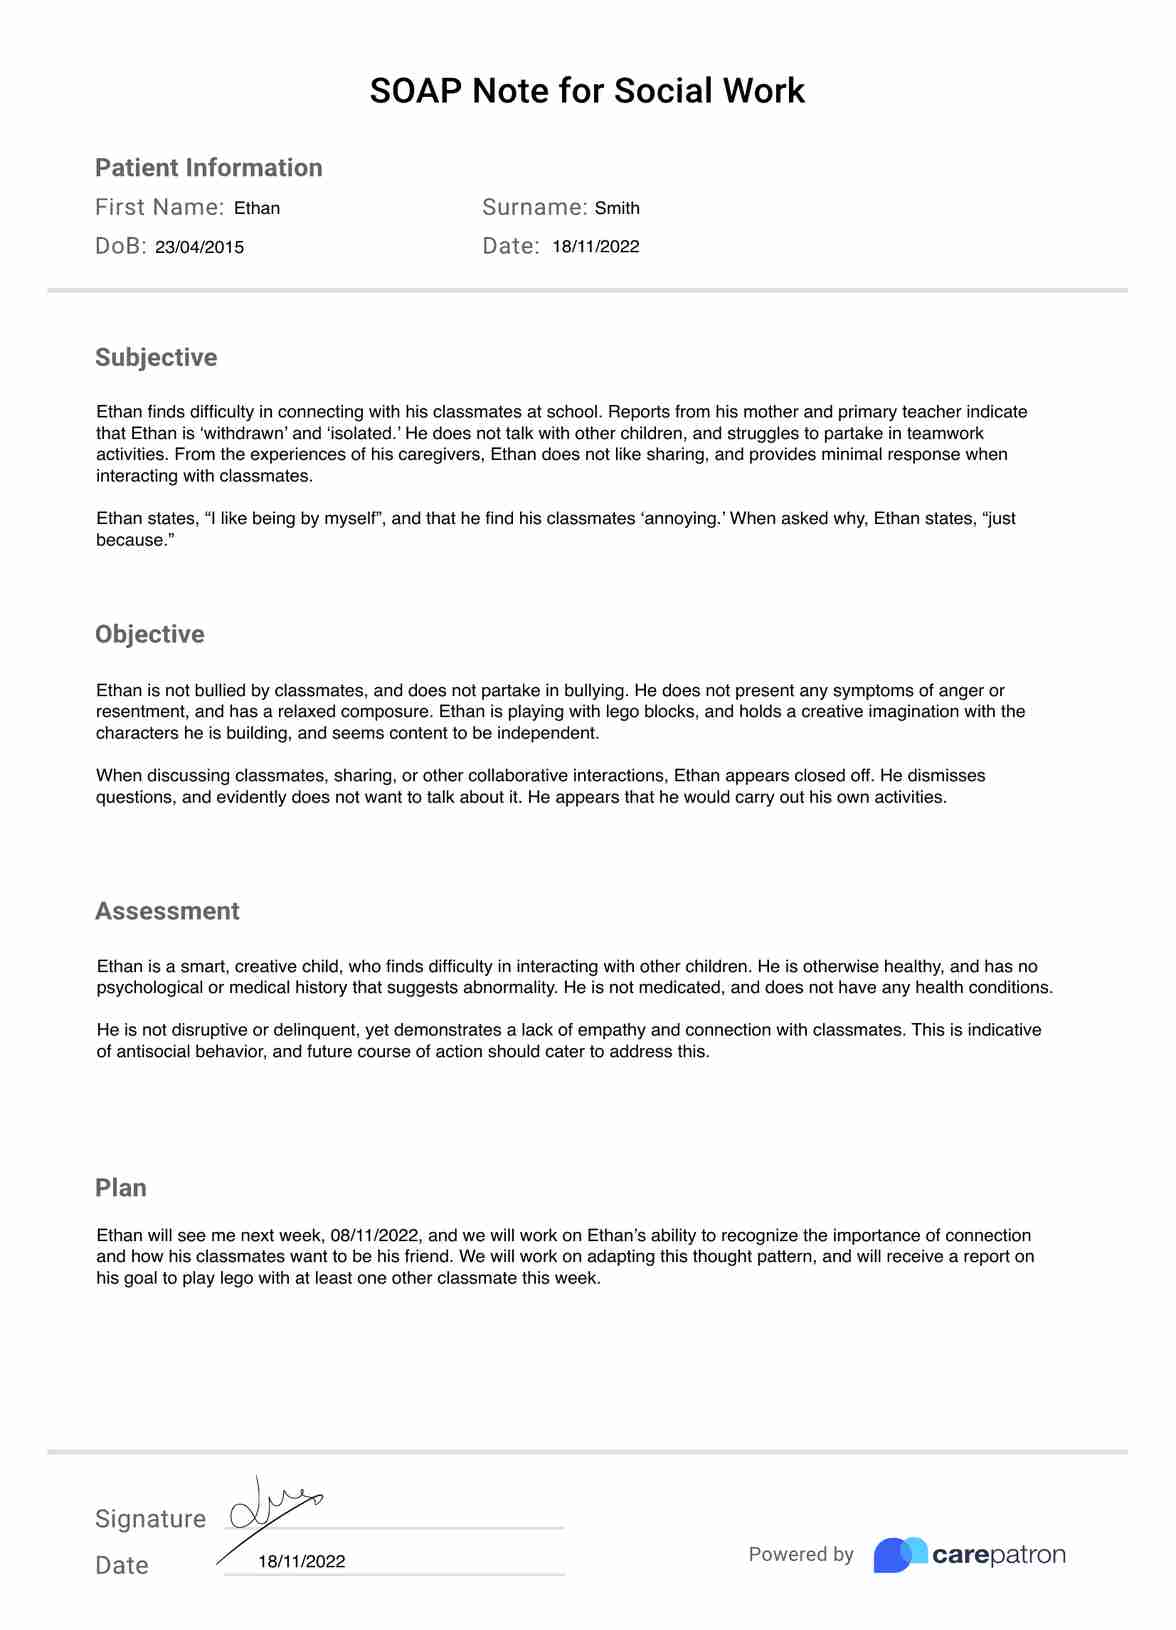 Notas SOAP para Trabajo Social PDF Example